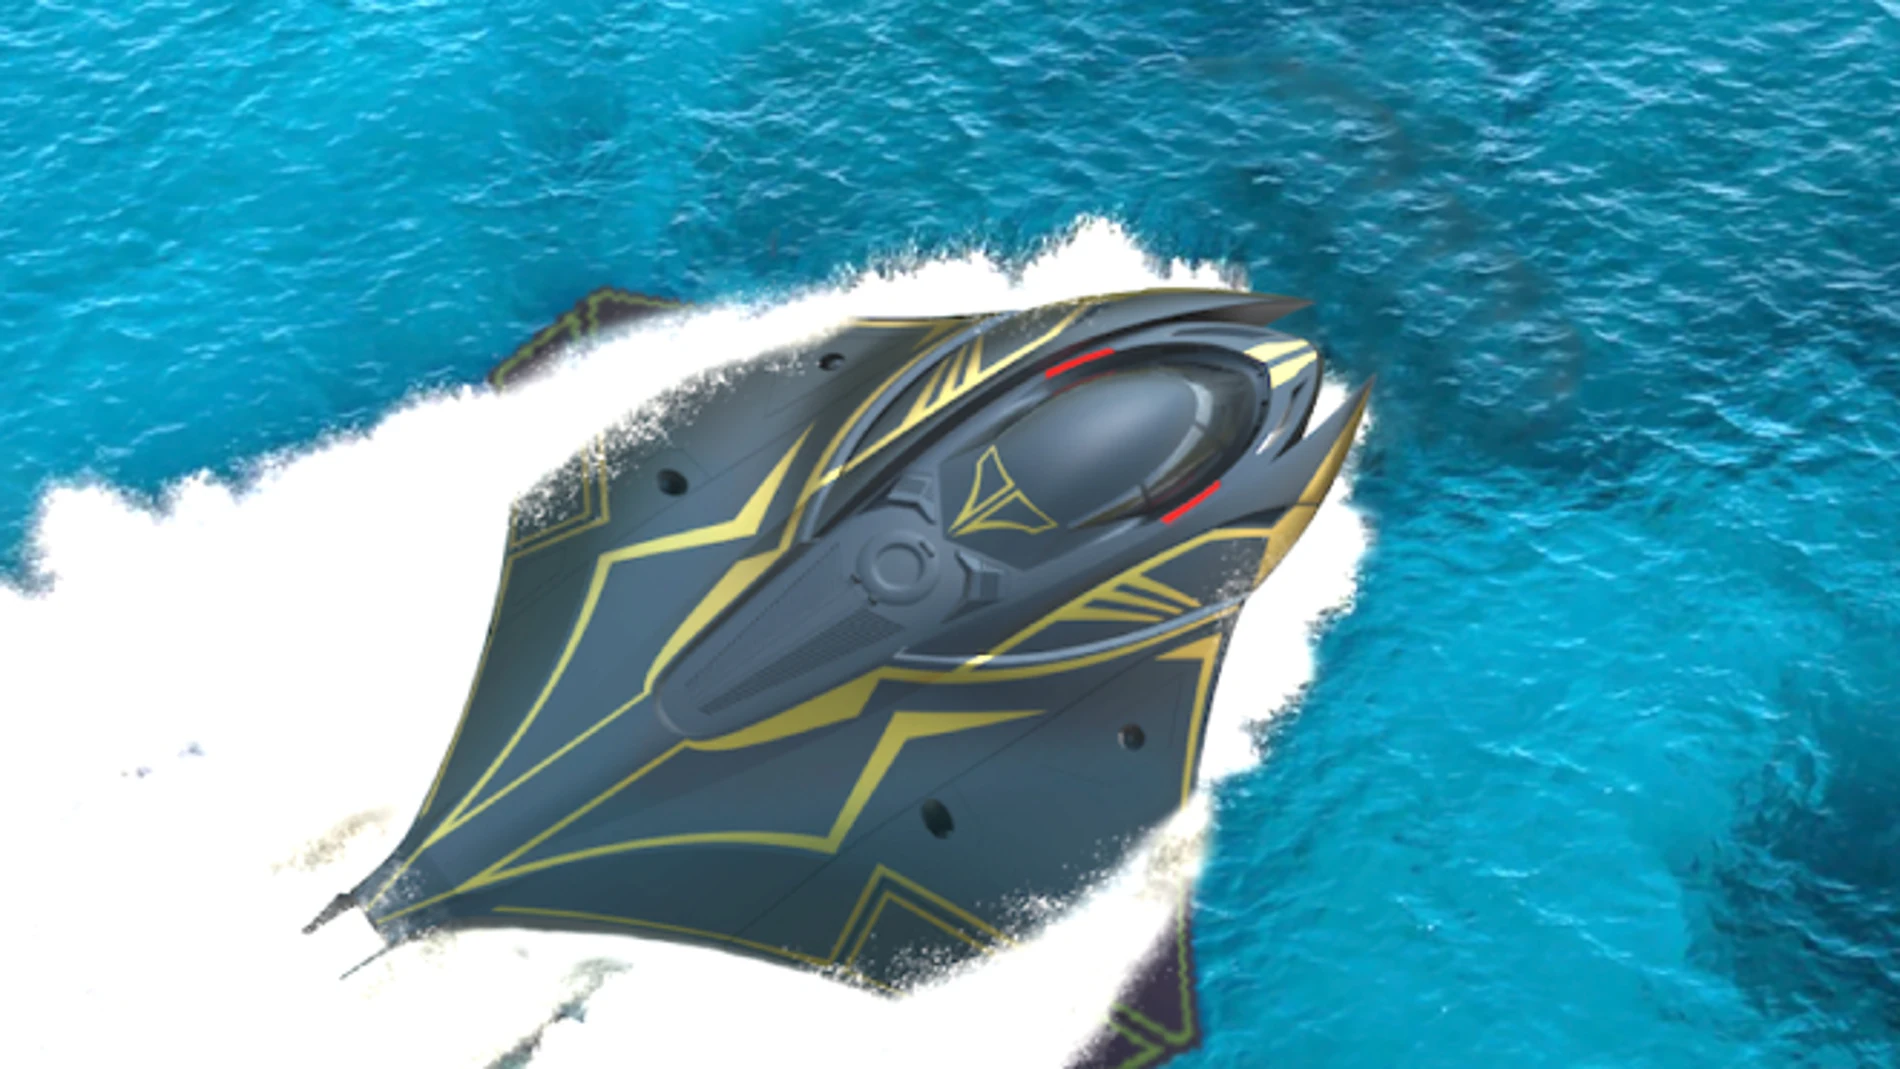 Ucrania desarrolla el primer submarino furtivo que realiza giros de 180° a máxima velocidad.